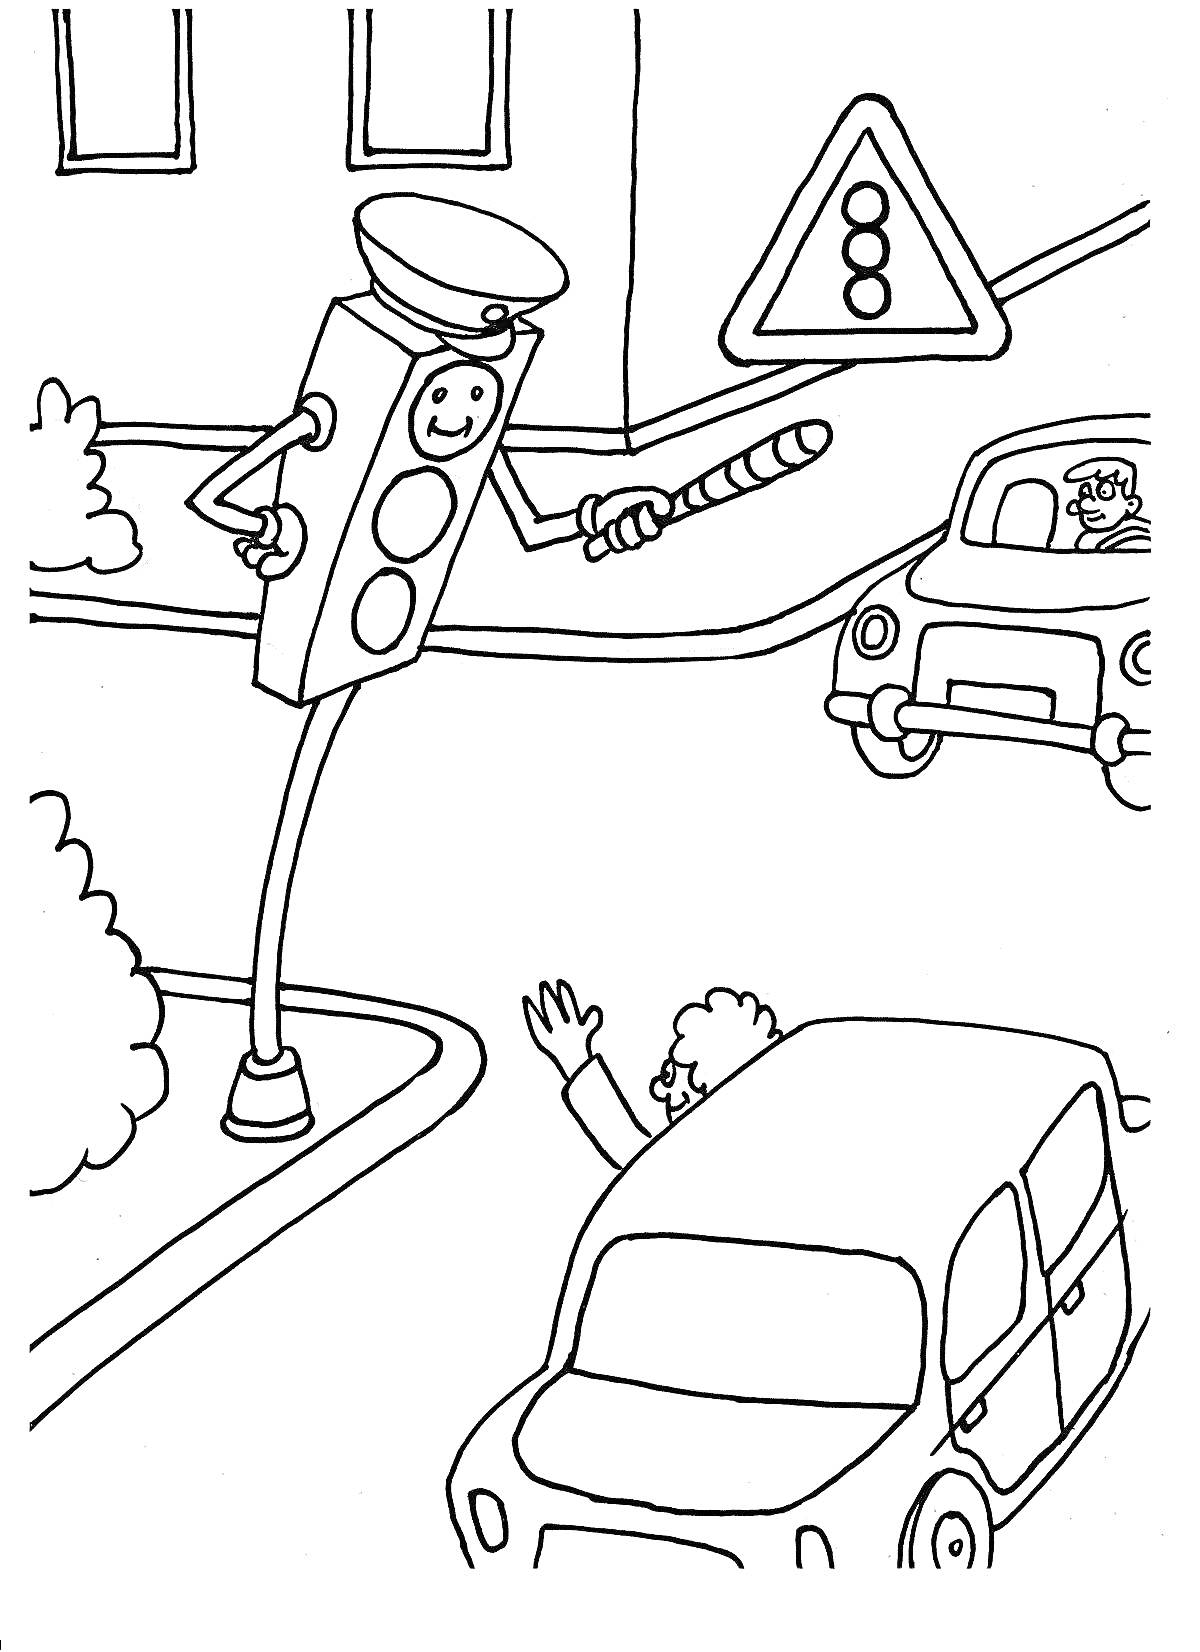 Перекресток с говорящим светофором, дорожным знаком и машинами